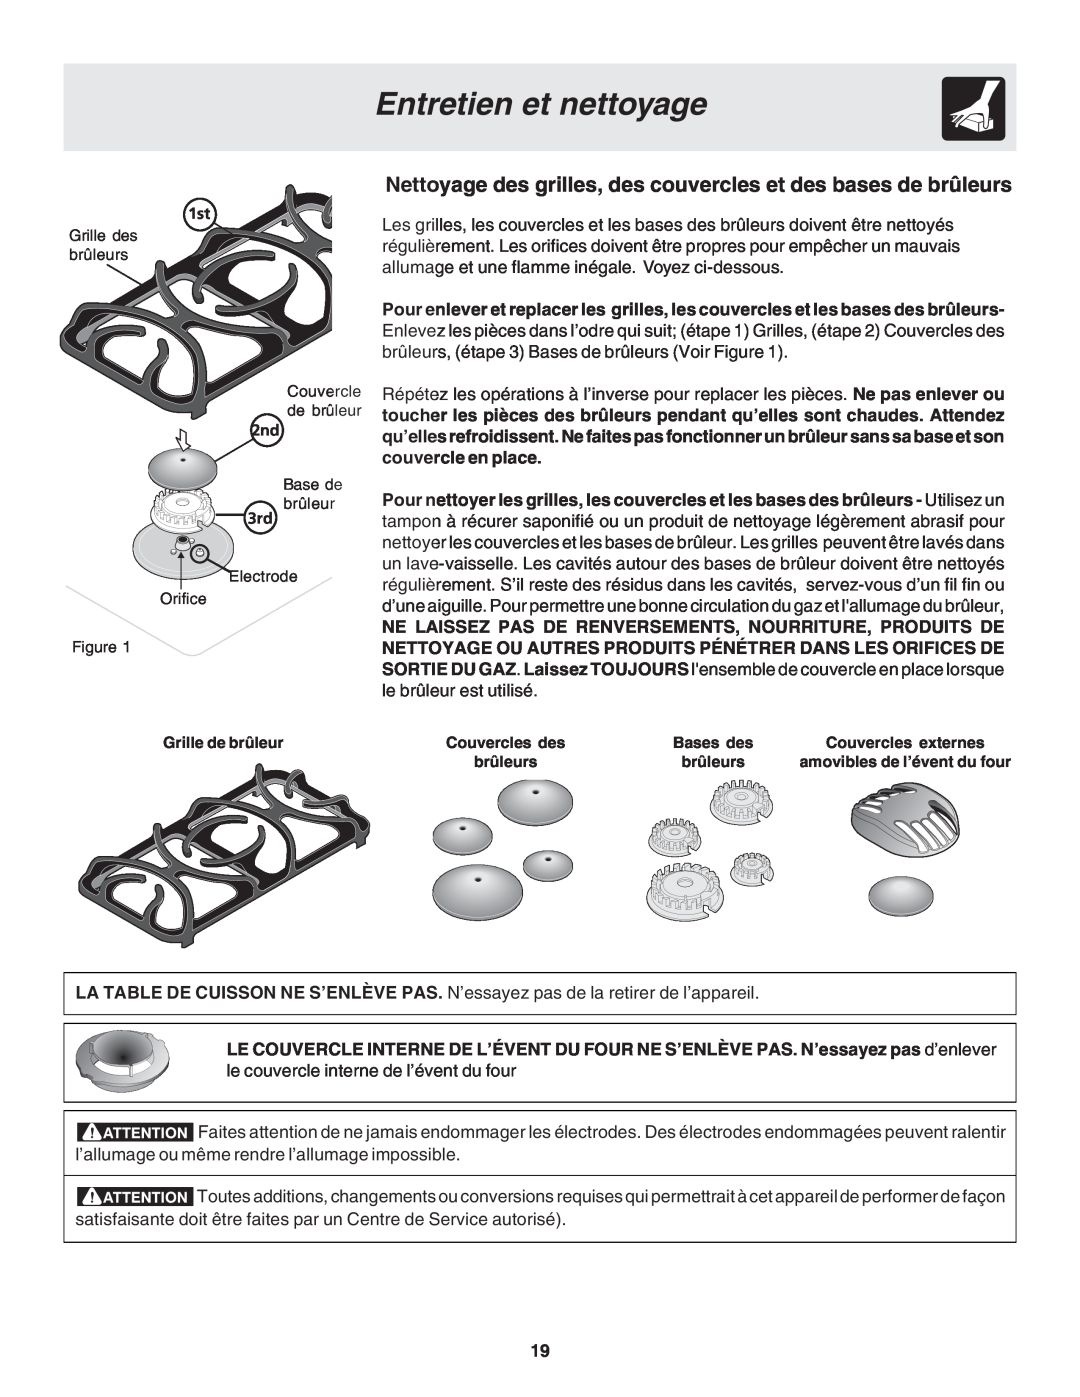 Frigidaire 318200879 manual Entretien et nettoyage, Nettoyage des grilles, des couvercles et des bases de brûleurs 